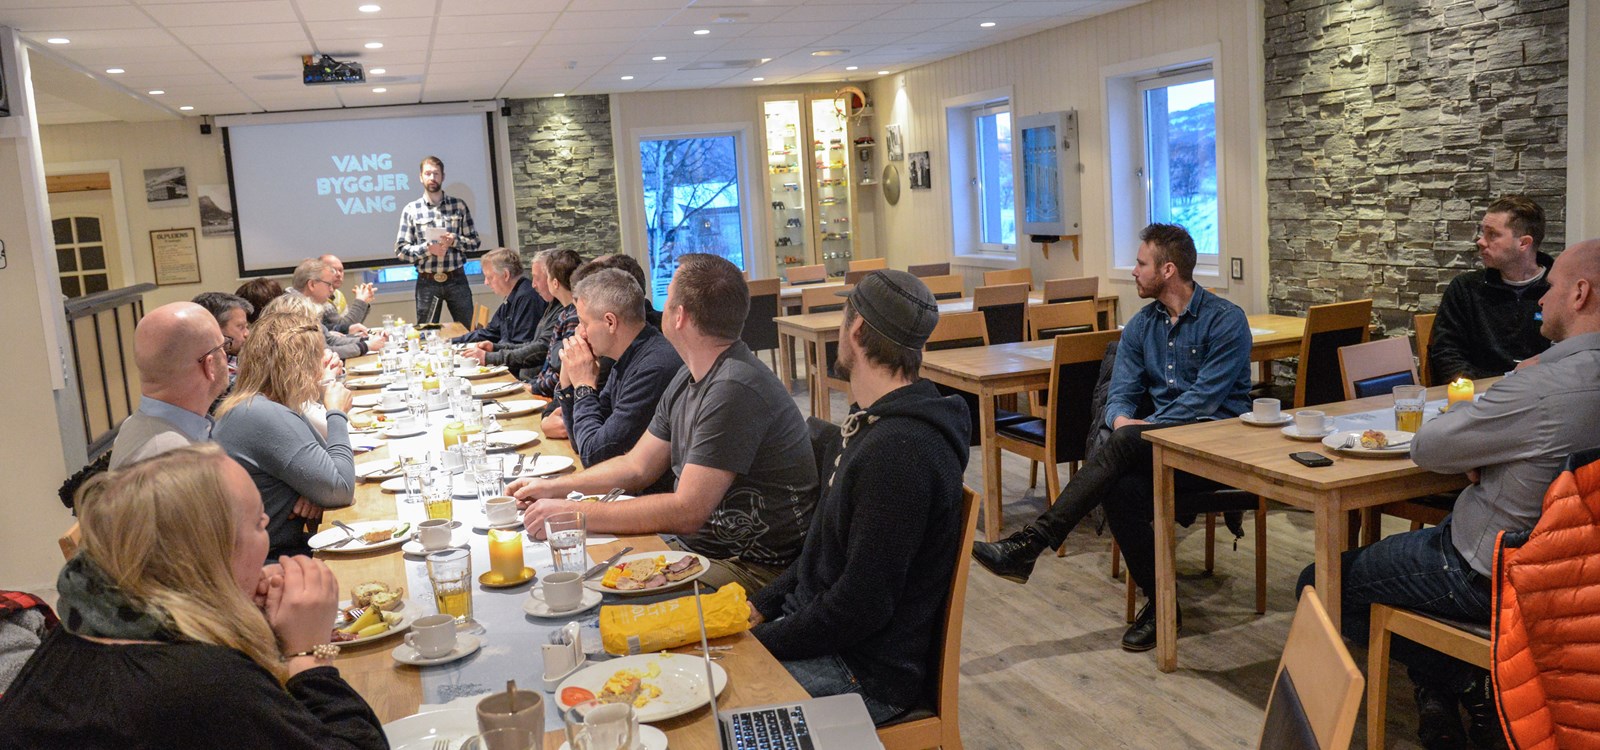 Nesten tretti var på plass for årets fyrste næringsfrukost i Vang.